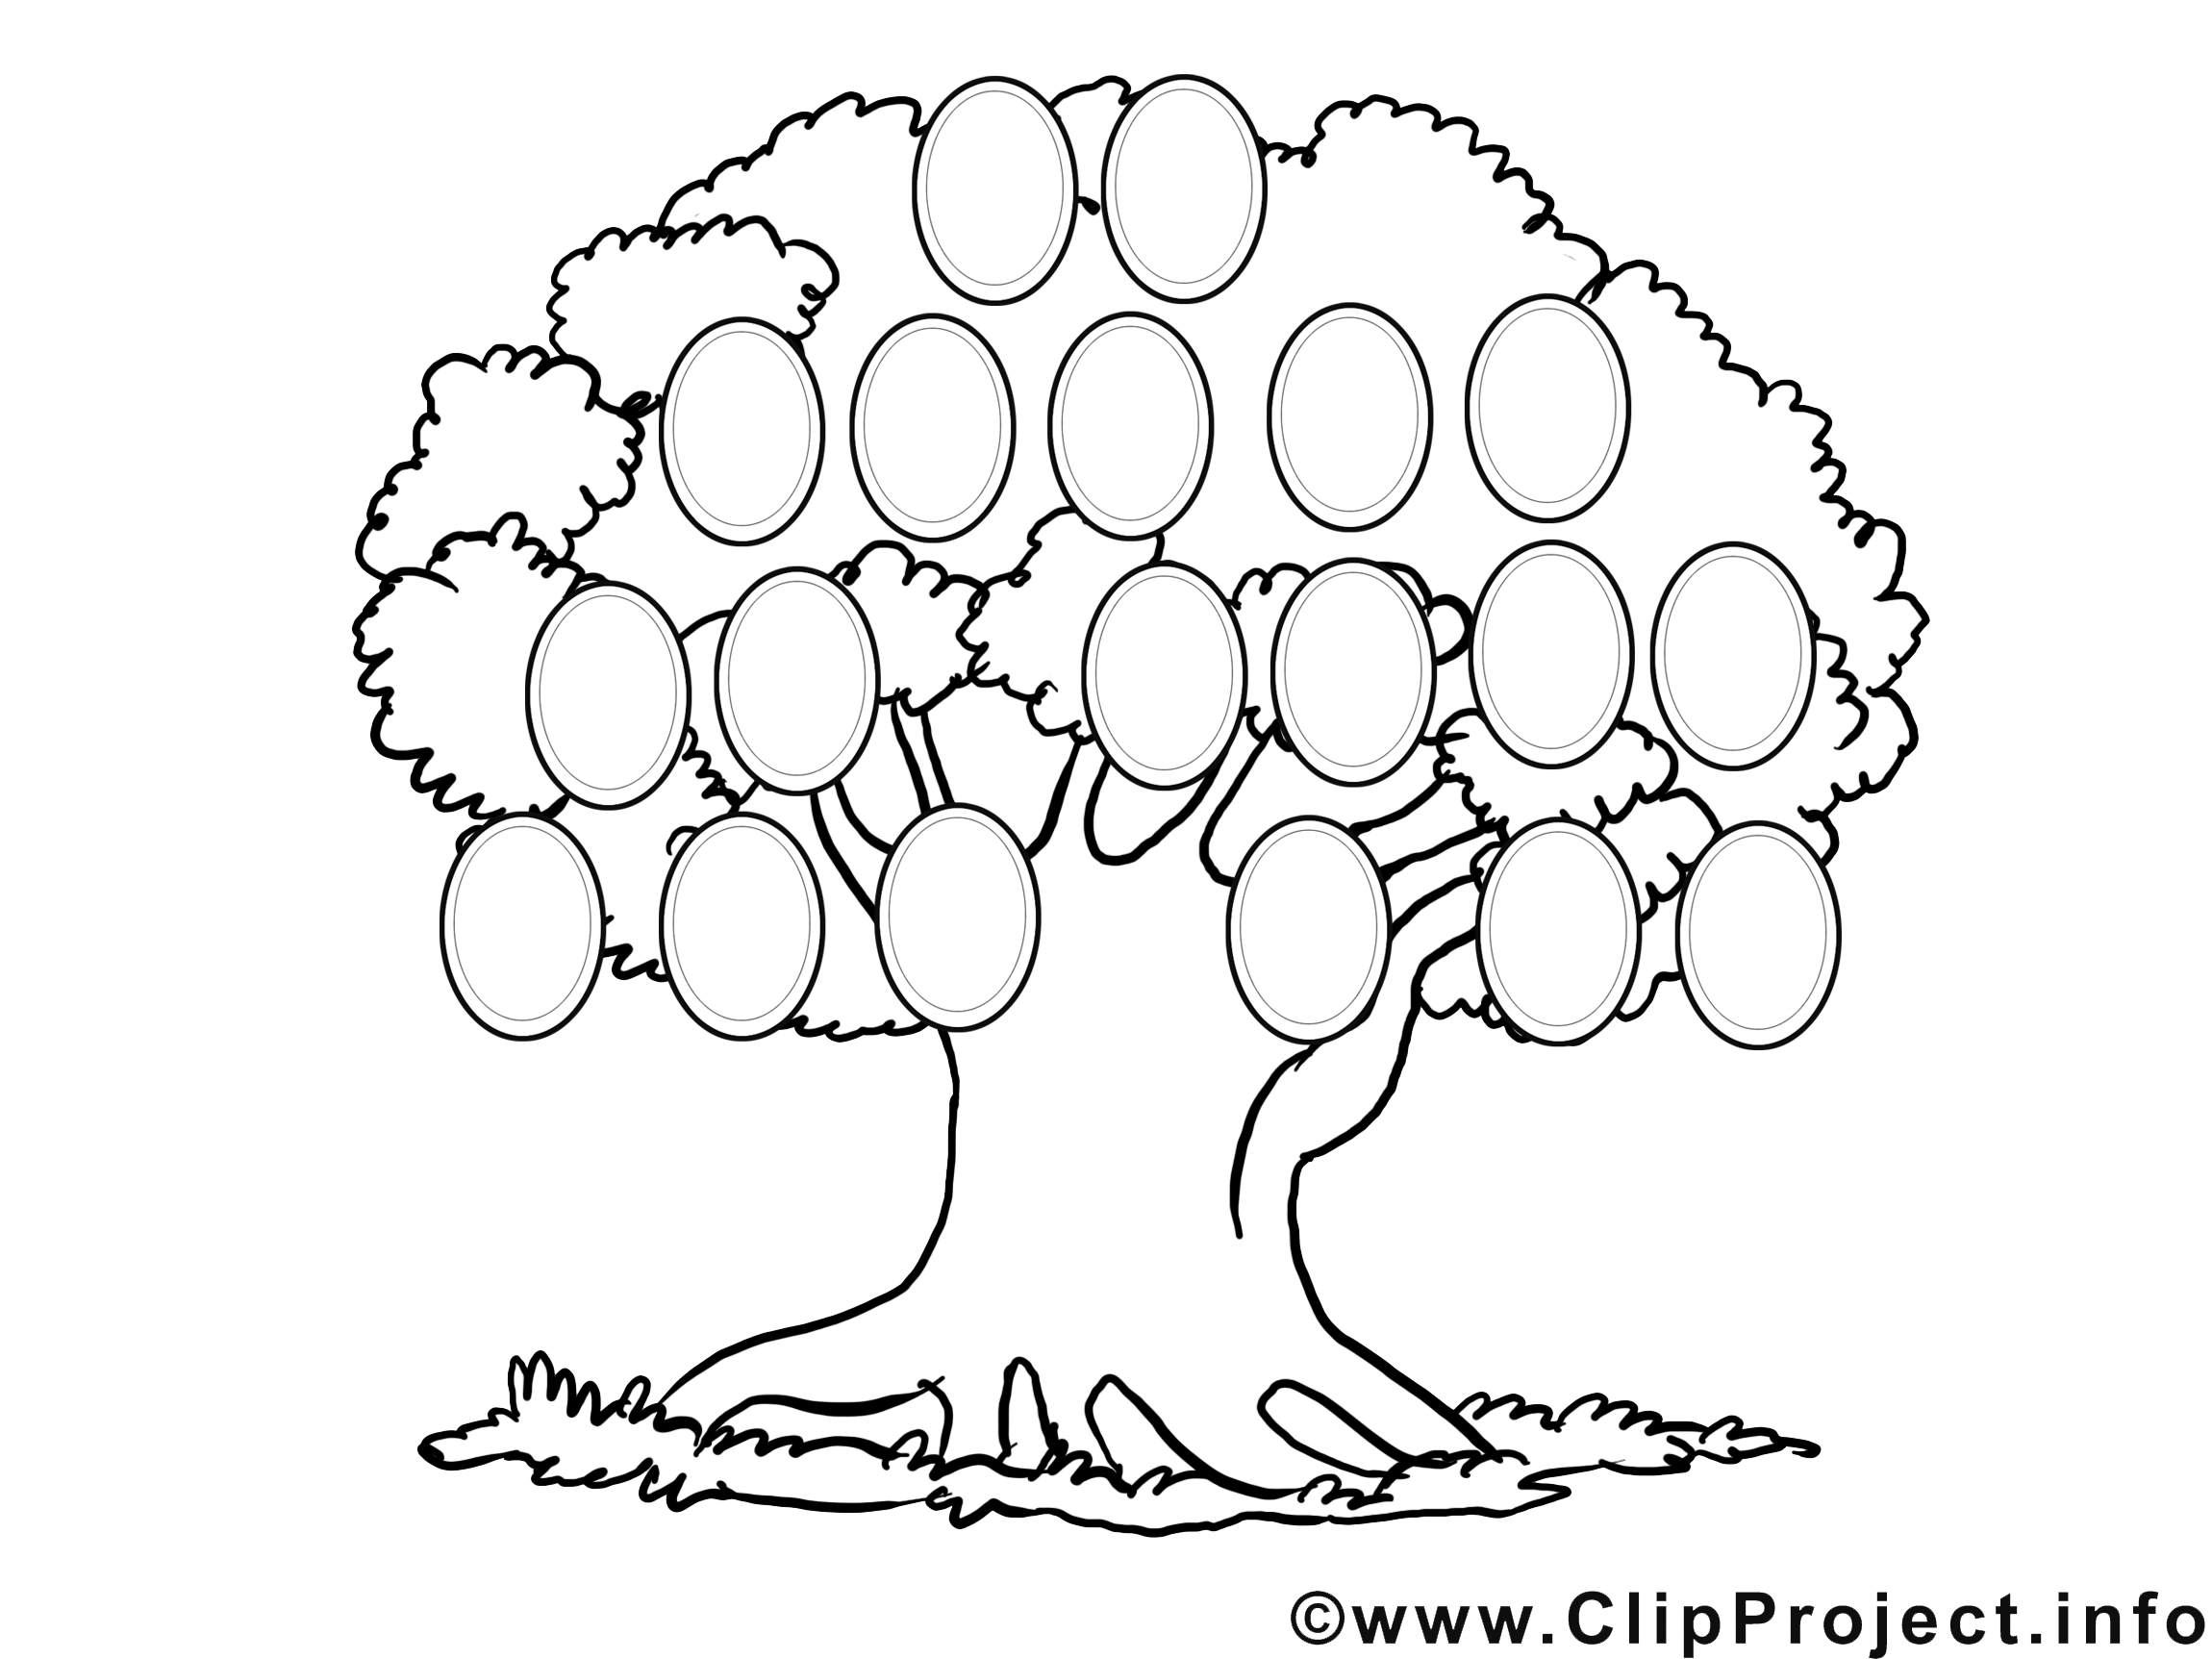 clipart gratuit arbre - photo #49